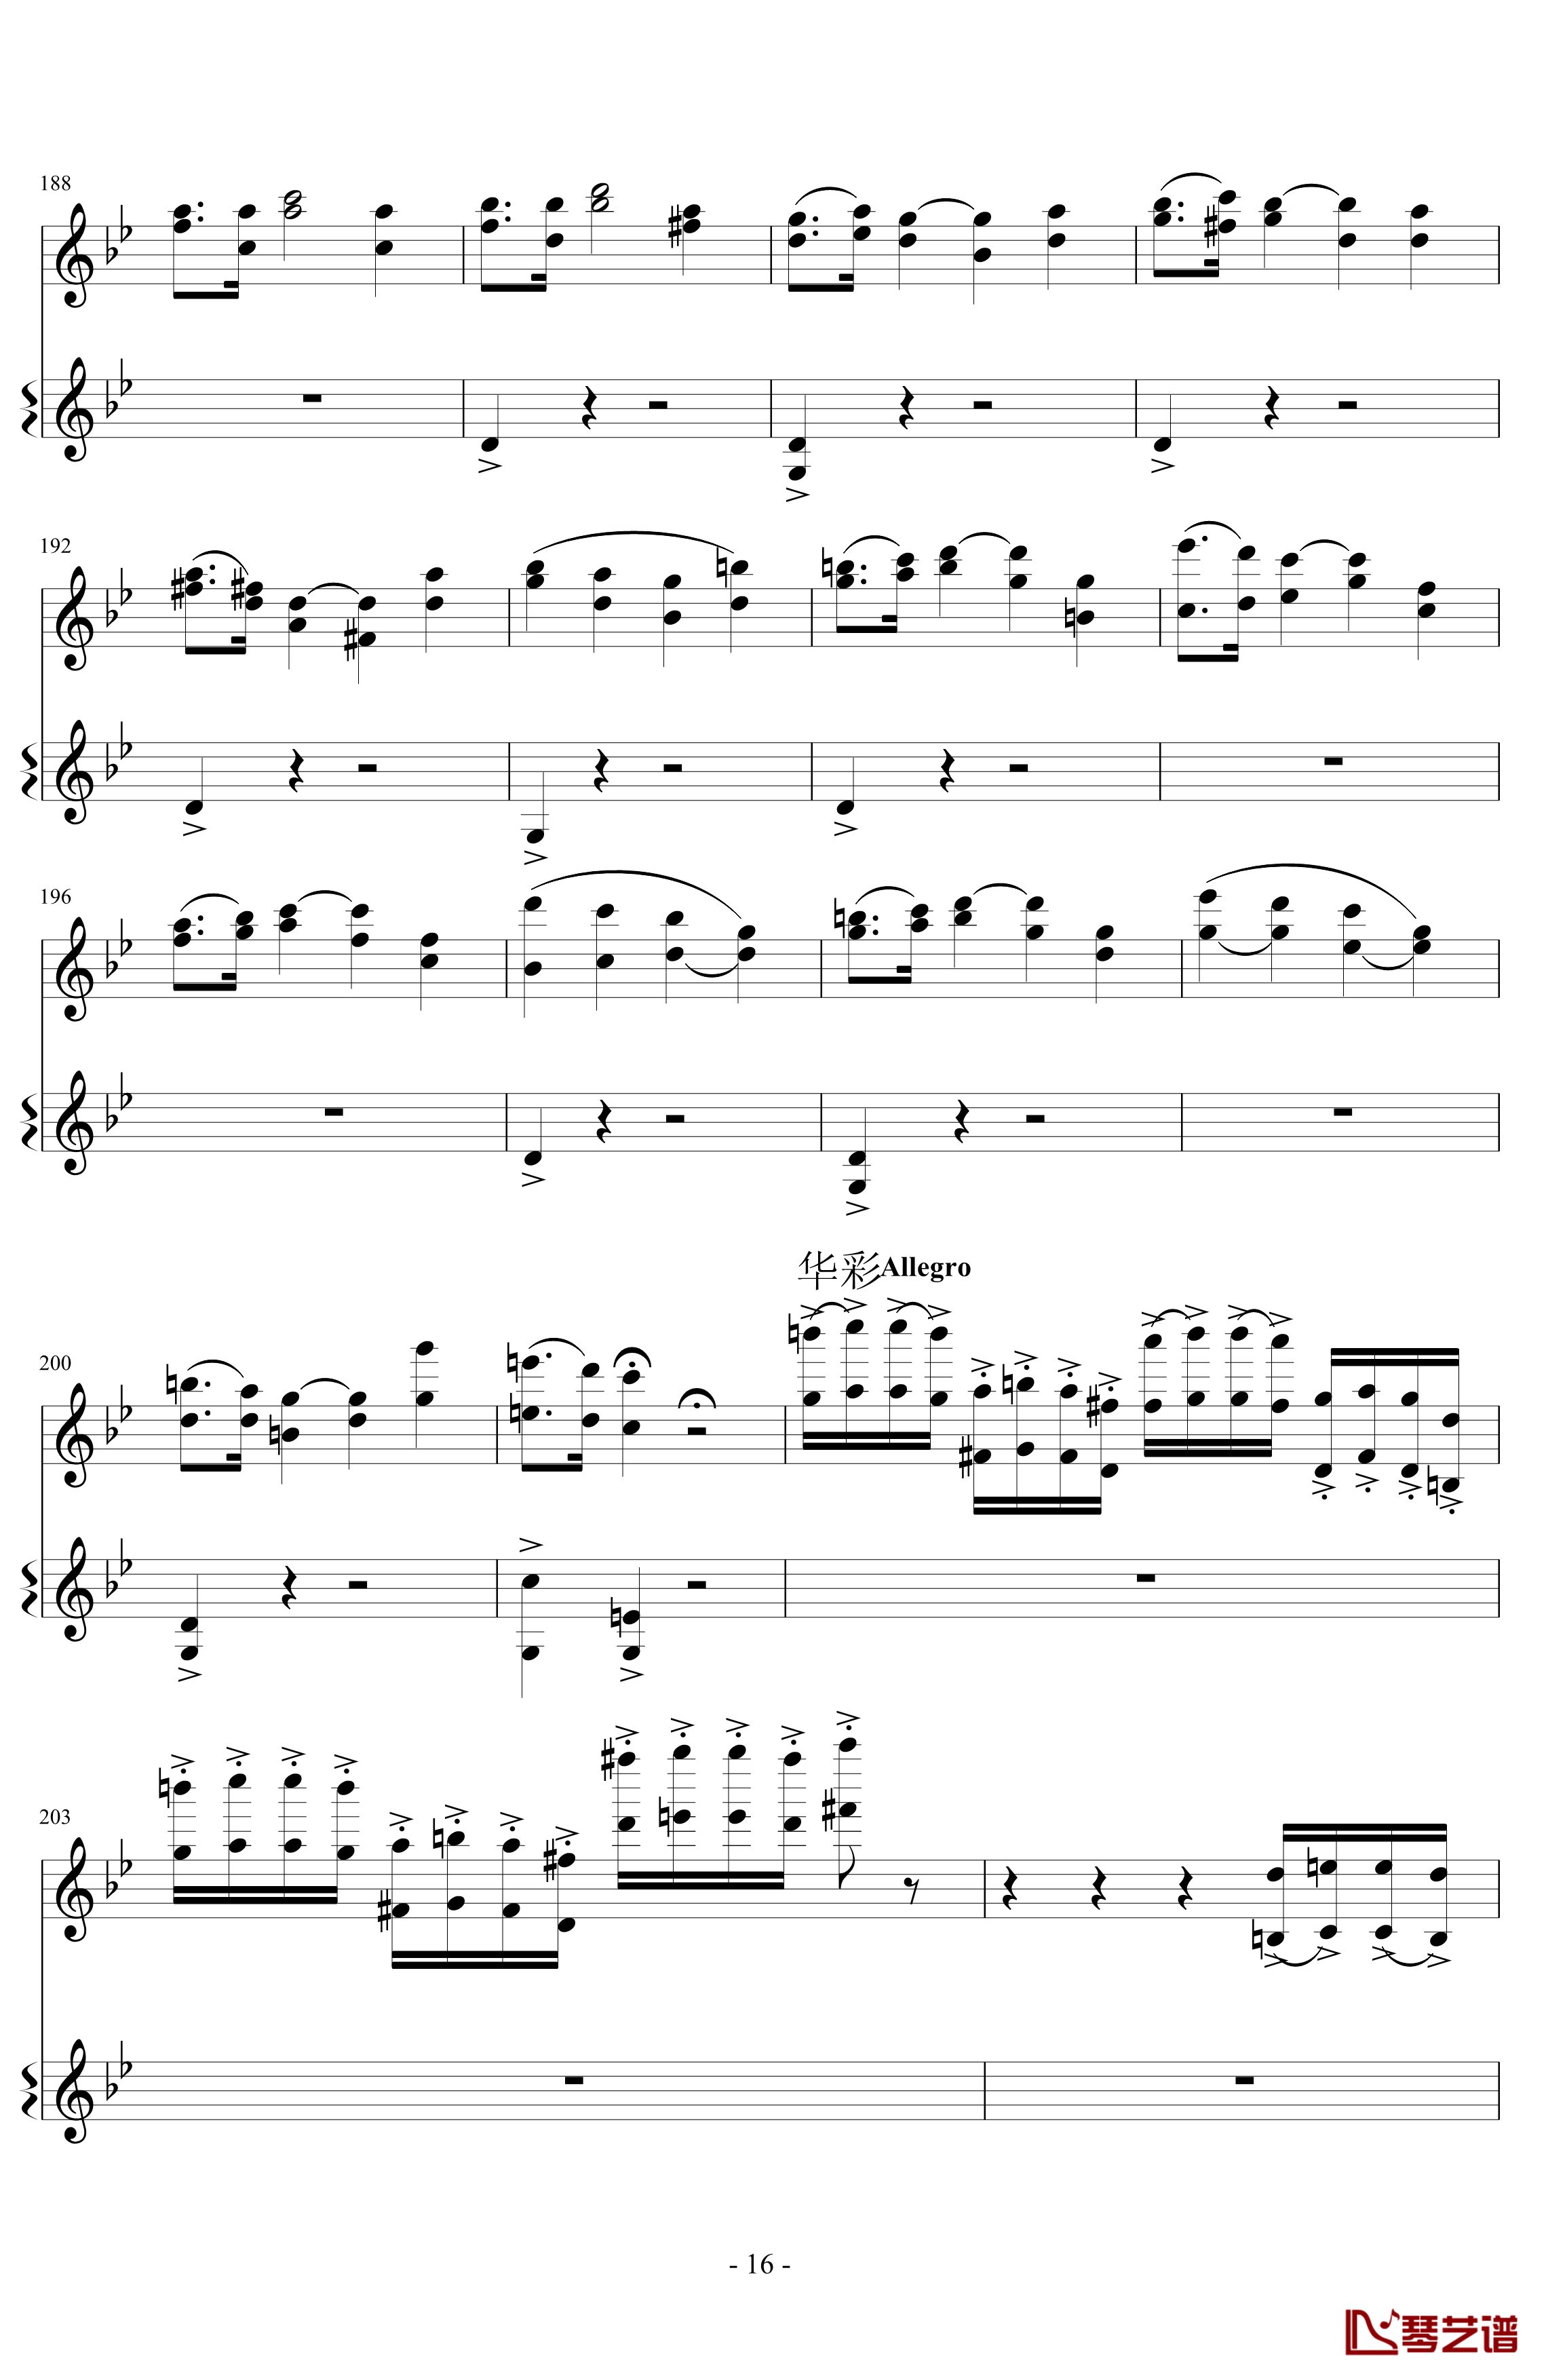 意大利国歌变奏曲钢琴谱-DXF16